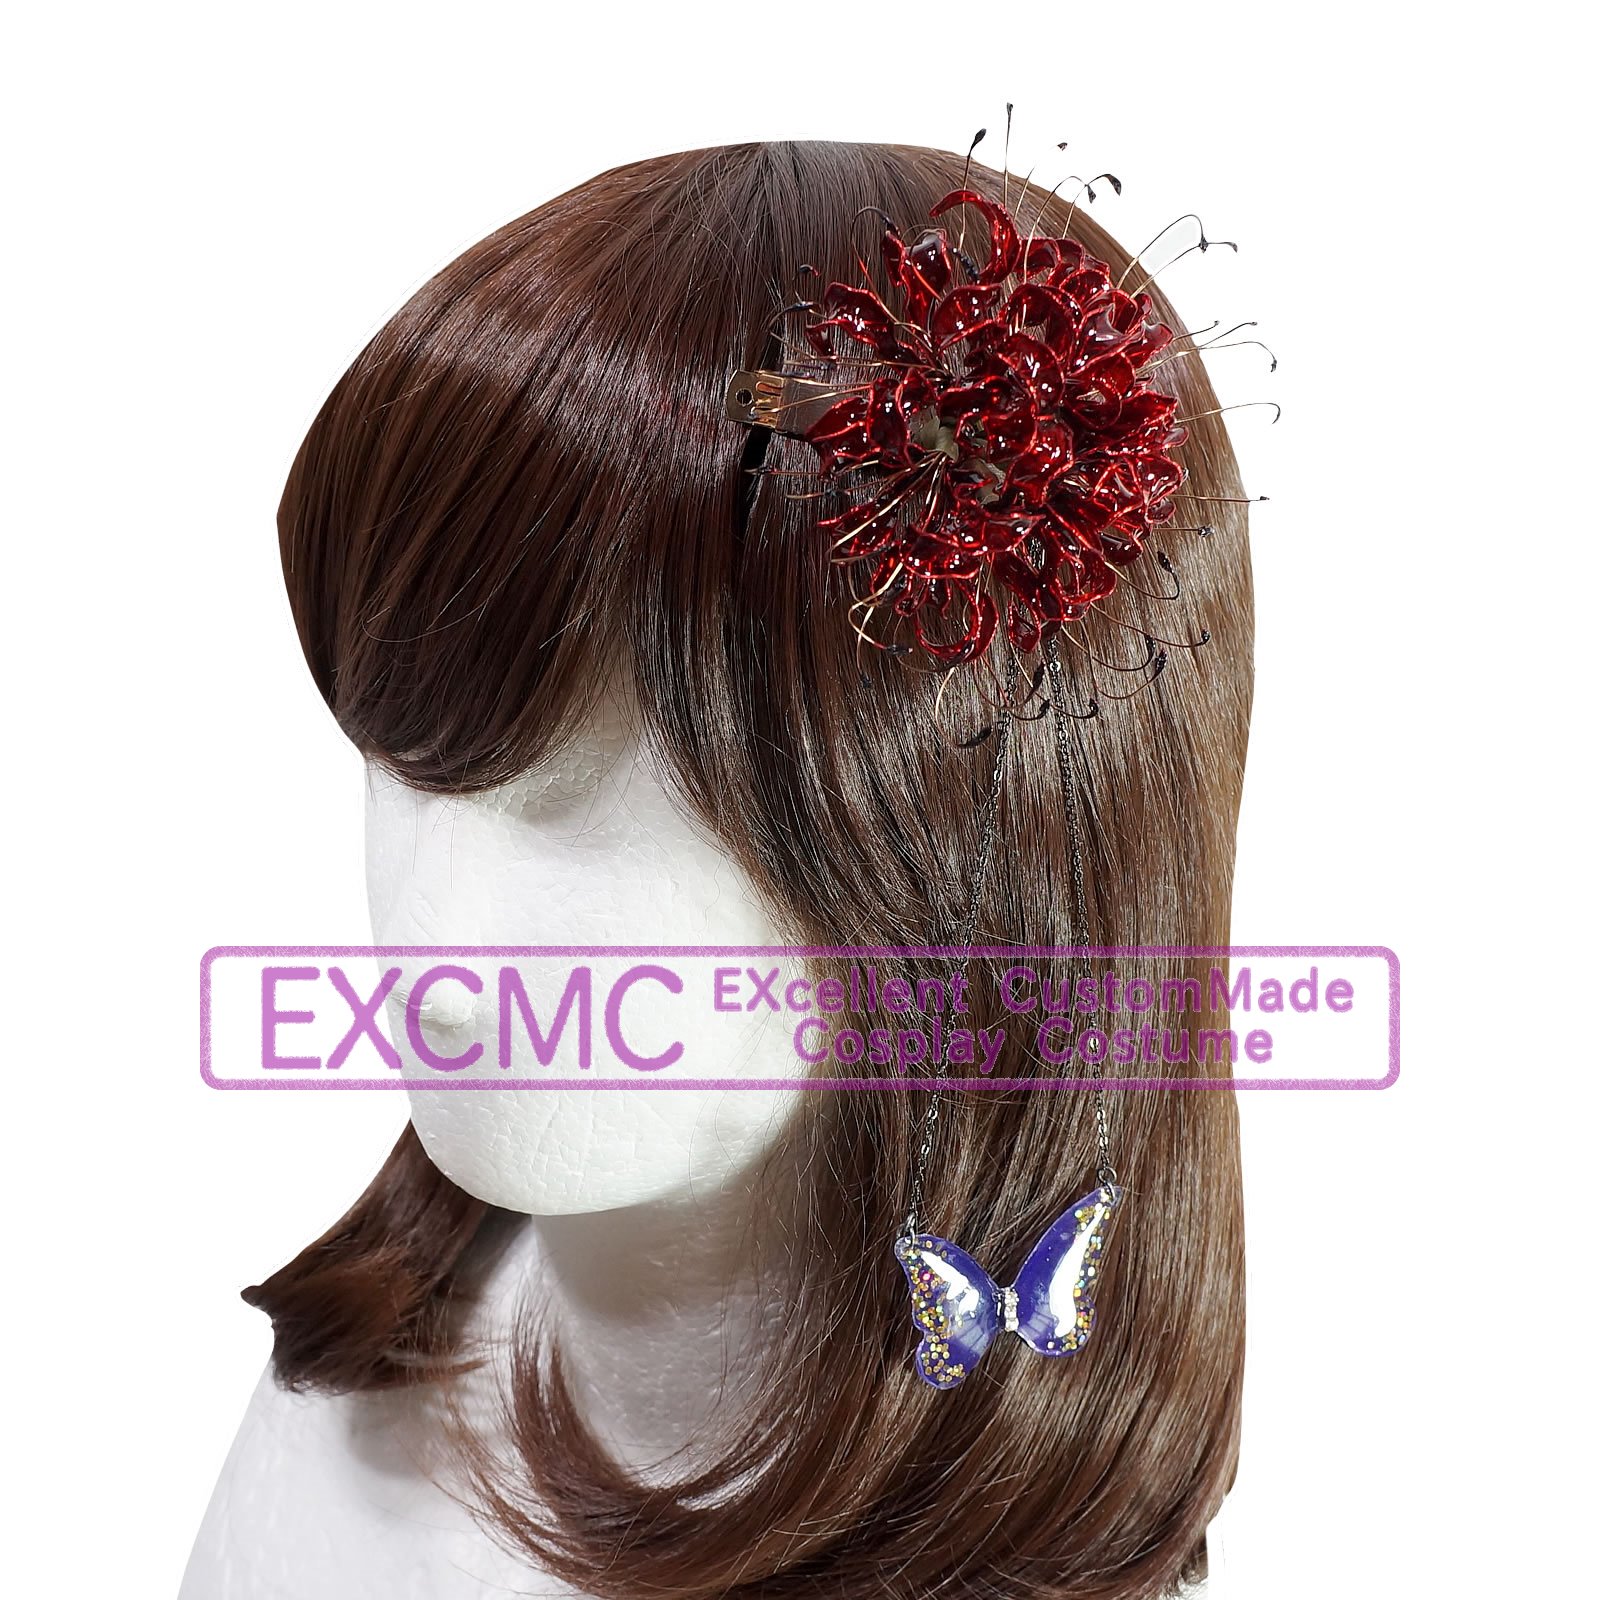 ヘタリア 日本娘 2pカラー 彼岸花髪飾り 風 コスプレ用アイテム オーダーコスプレ衣装 造形のエクシーmc